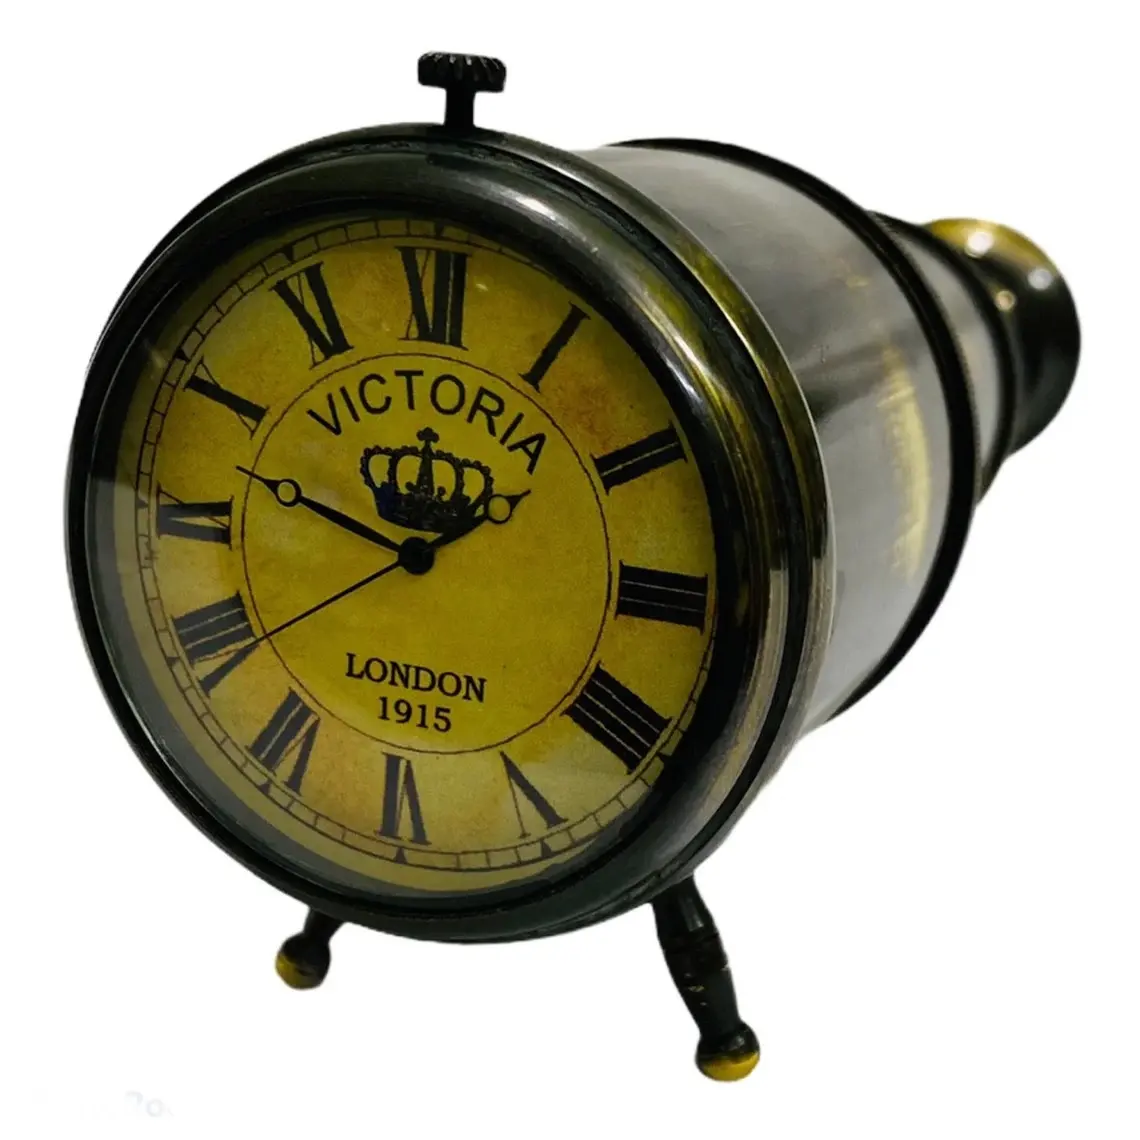 Antico orologio da tavolo in ottone marittimo Vintage Victoria London 1915 orologio da tavolo